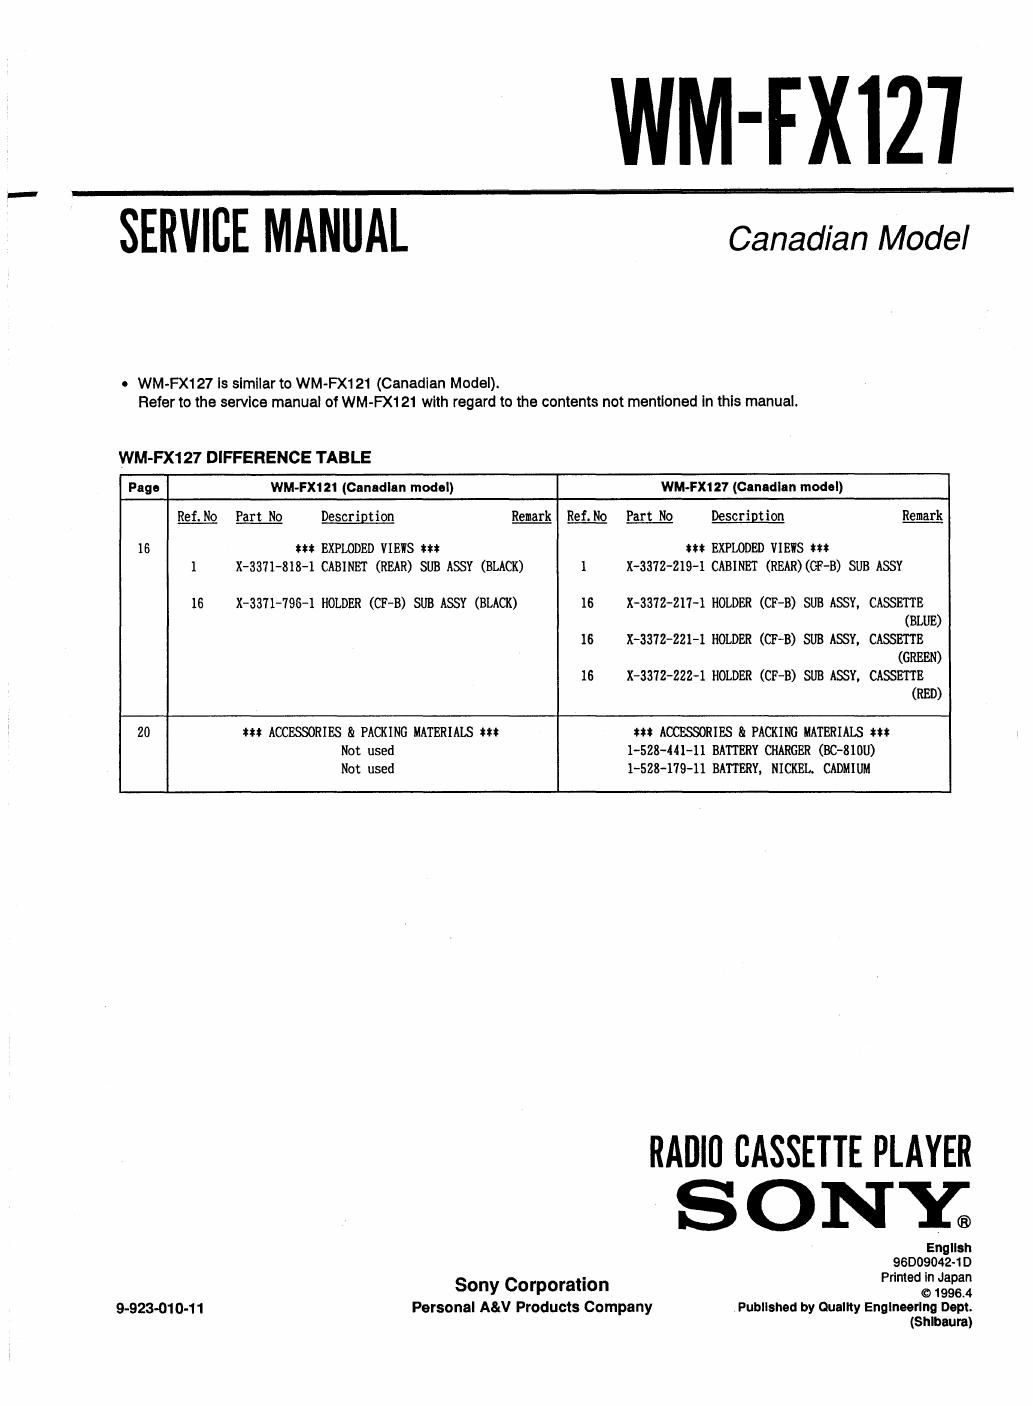 sony wm fx 127 service manual